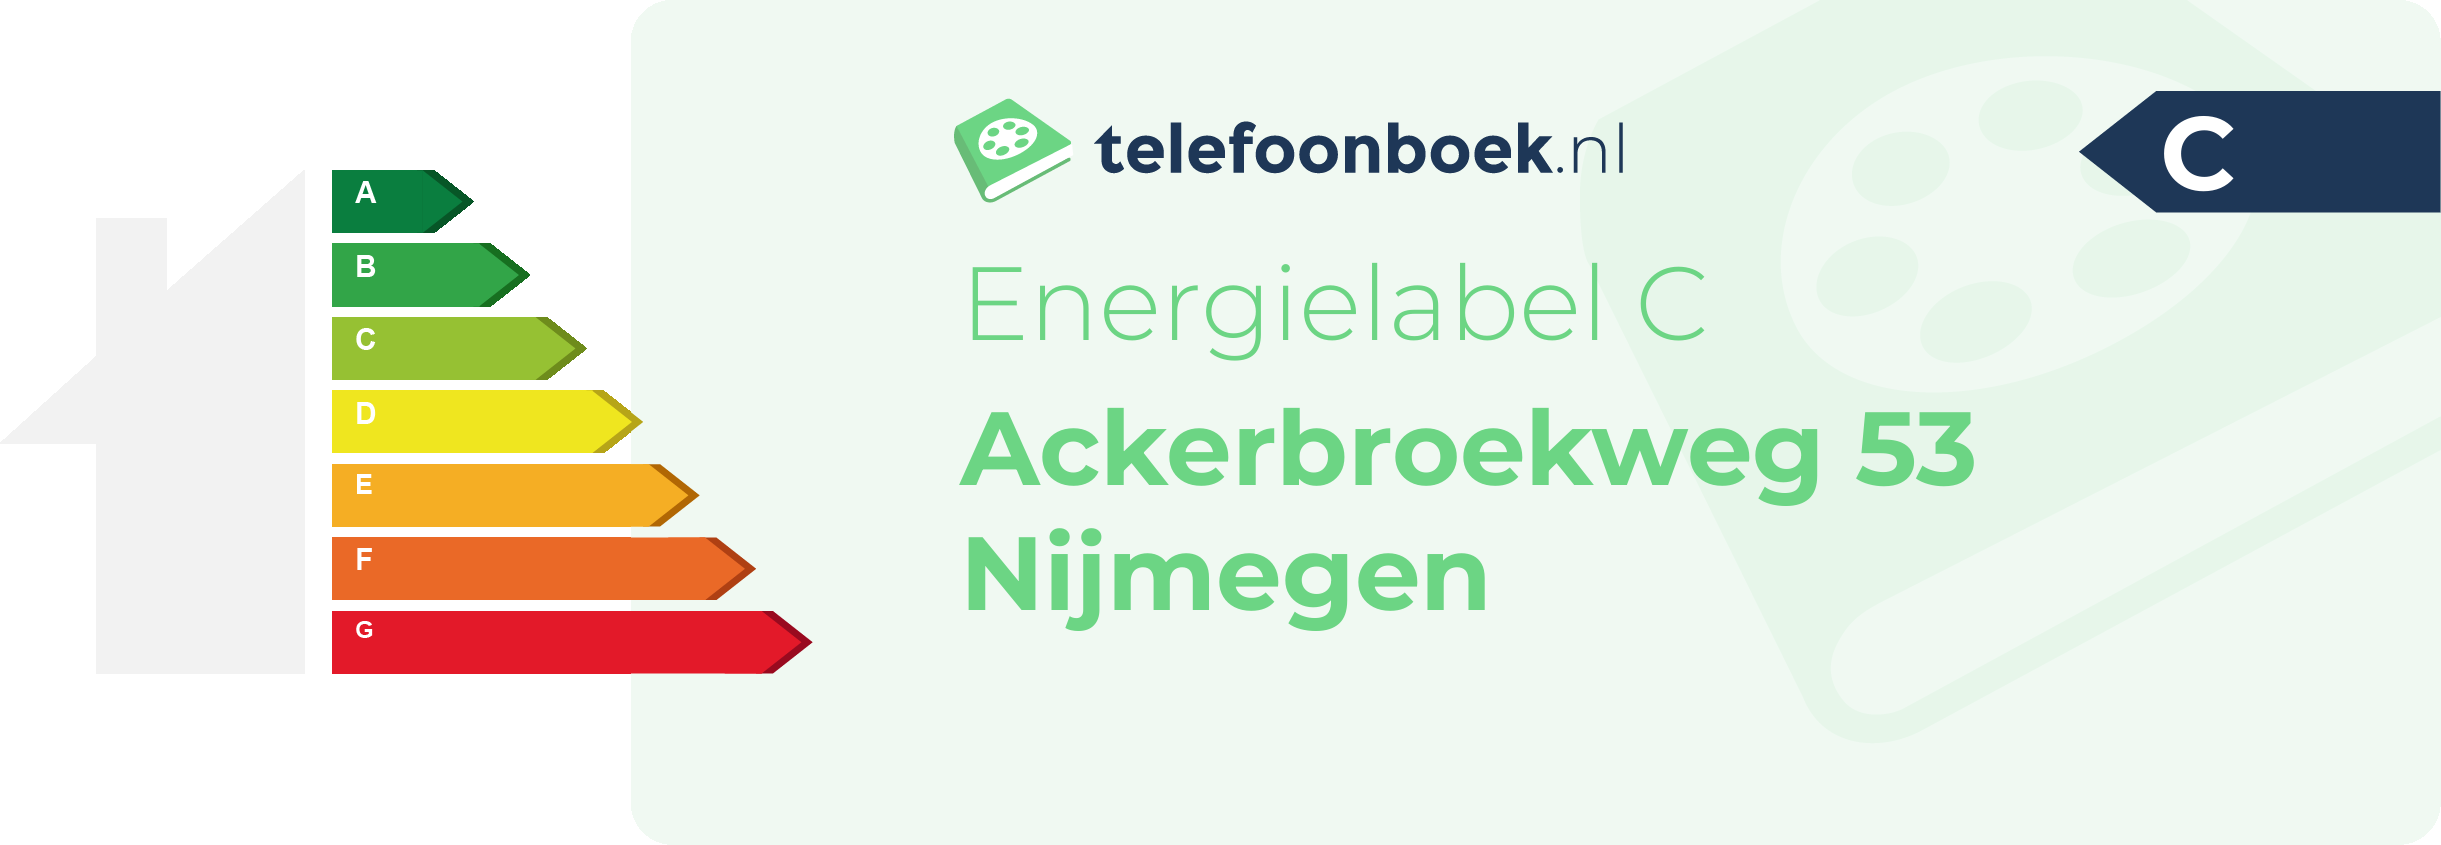 Energielabel Ackerbroekweg 53 Nijmegen